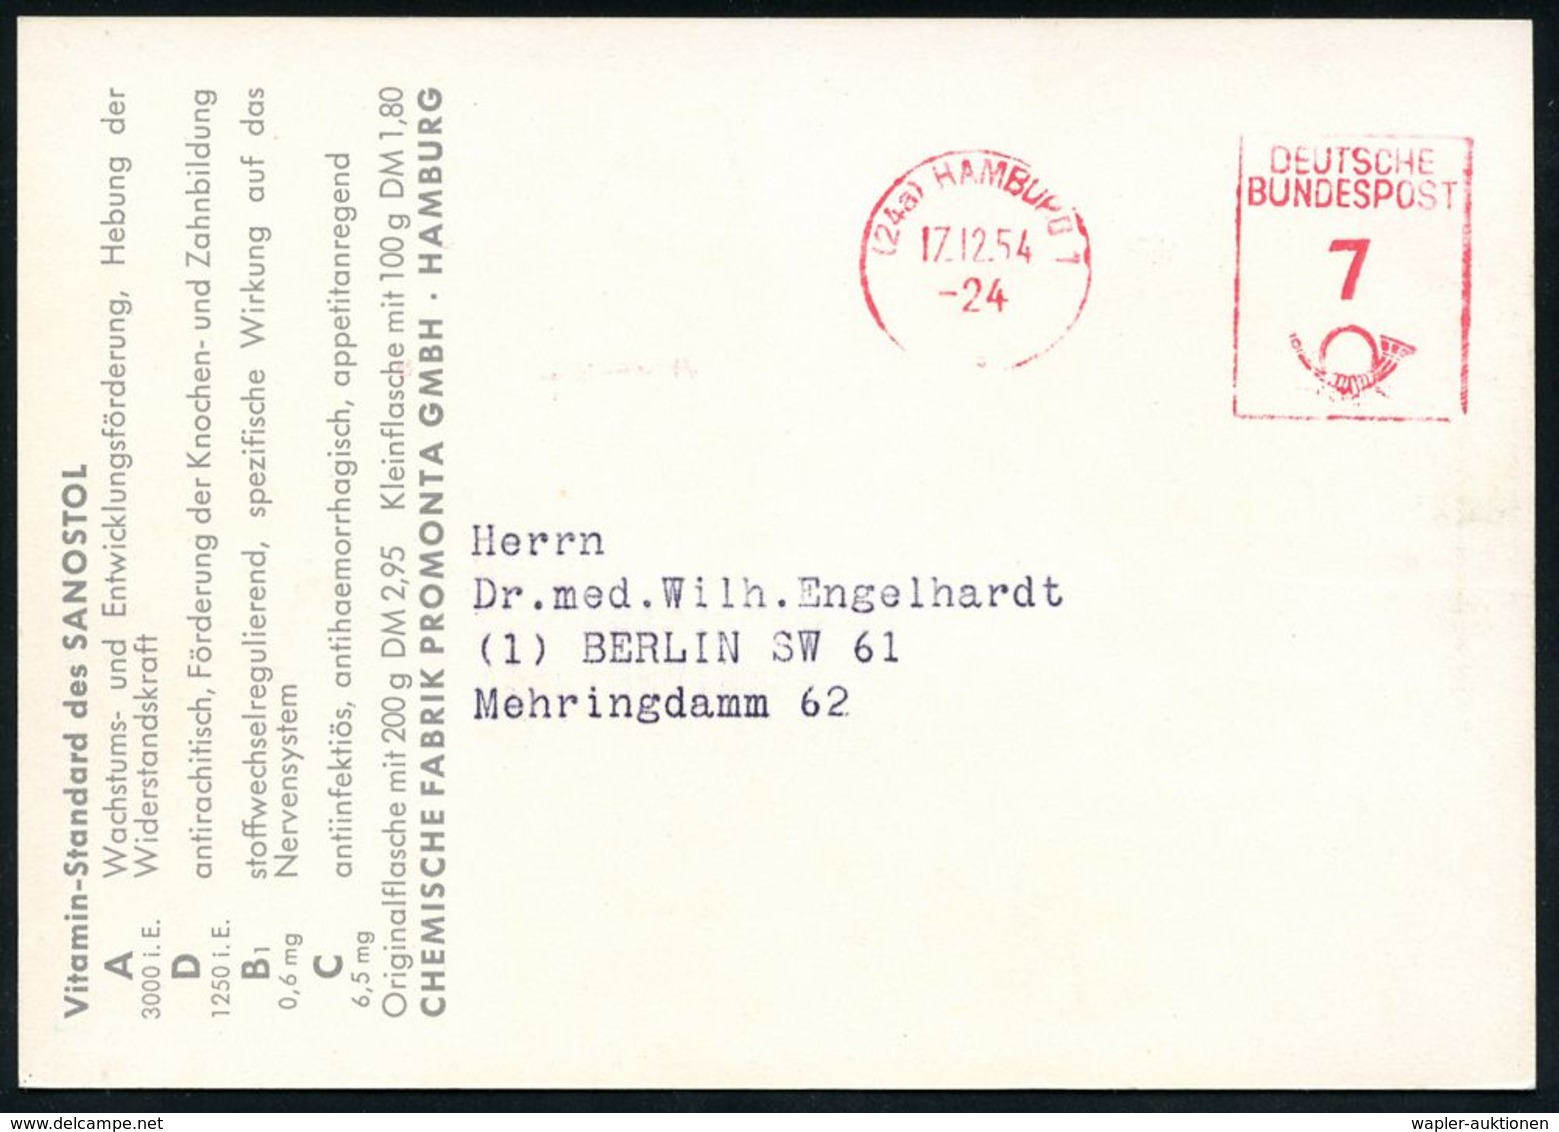 PÄDIATRIE / GYNÄKOLOGIE : (24a) HAMBURG 1/ DEUTSCHE/ BUNDESPOST 1954 (17.12.) PFS 7 Pf. Auf Künstler-Color-Reklame-Ktk.: - Malattie